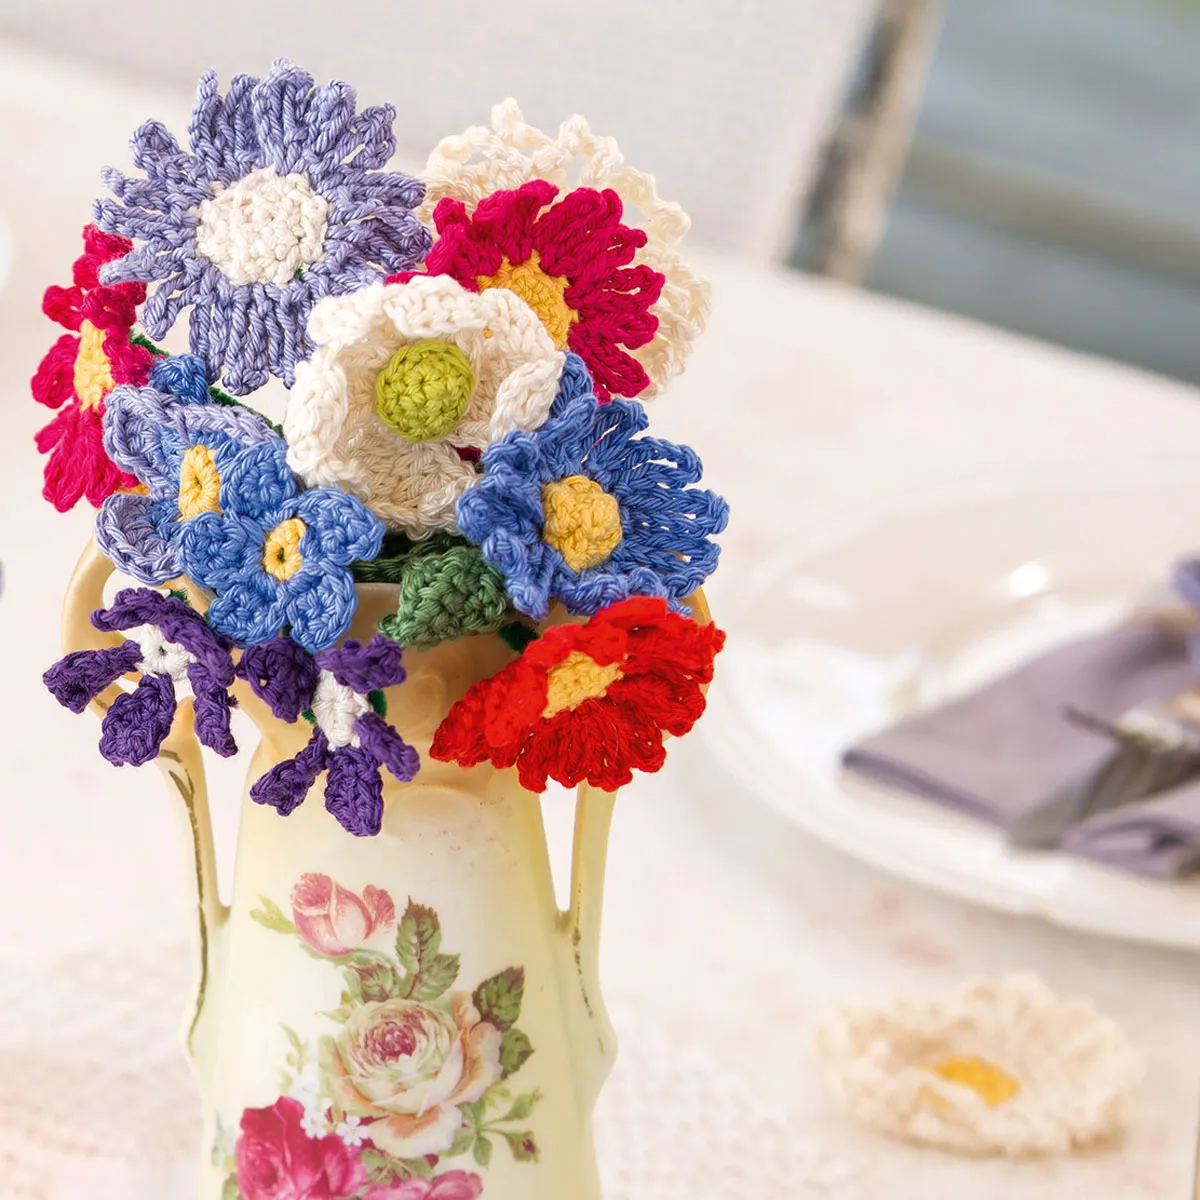 crochet-bouquet-of-flowers-in-a-vase